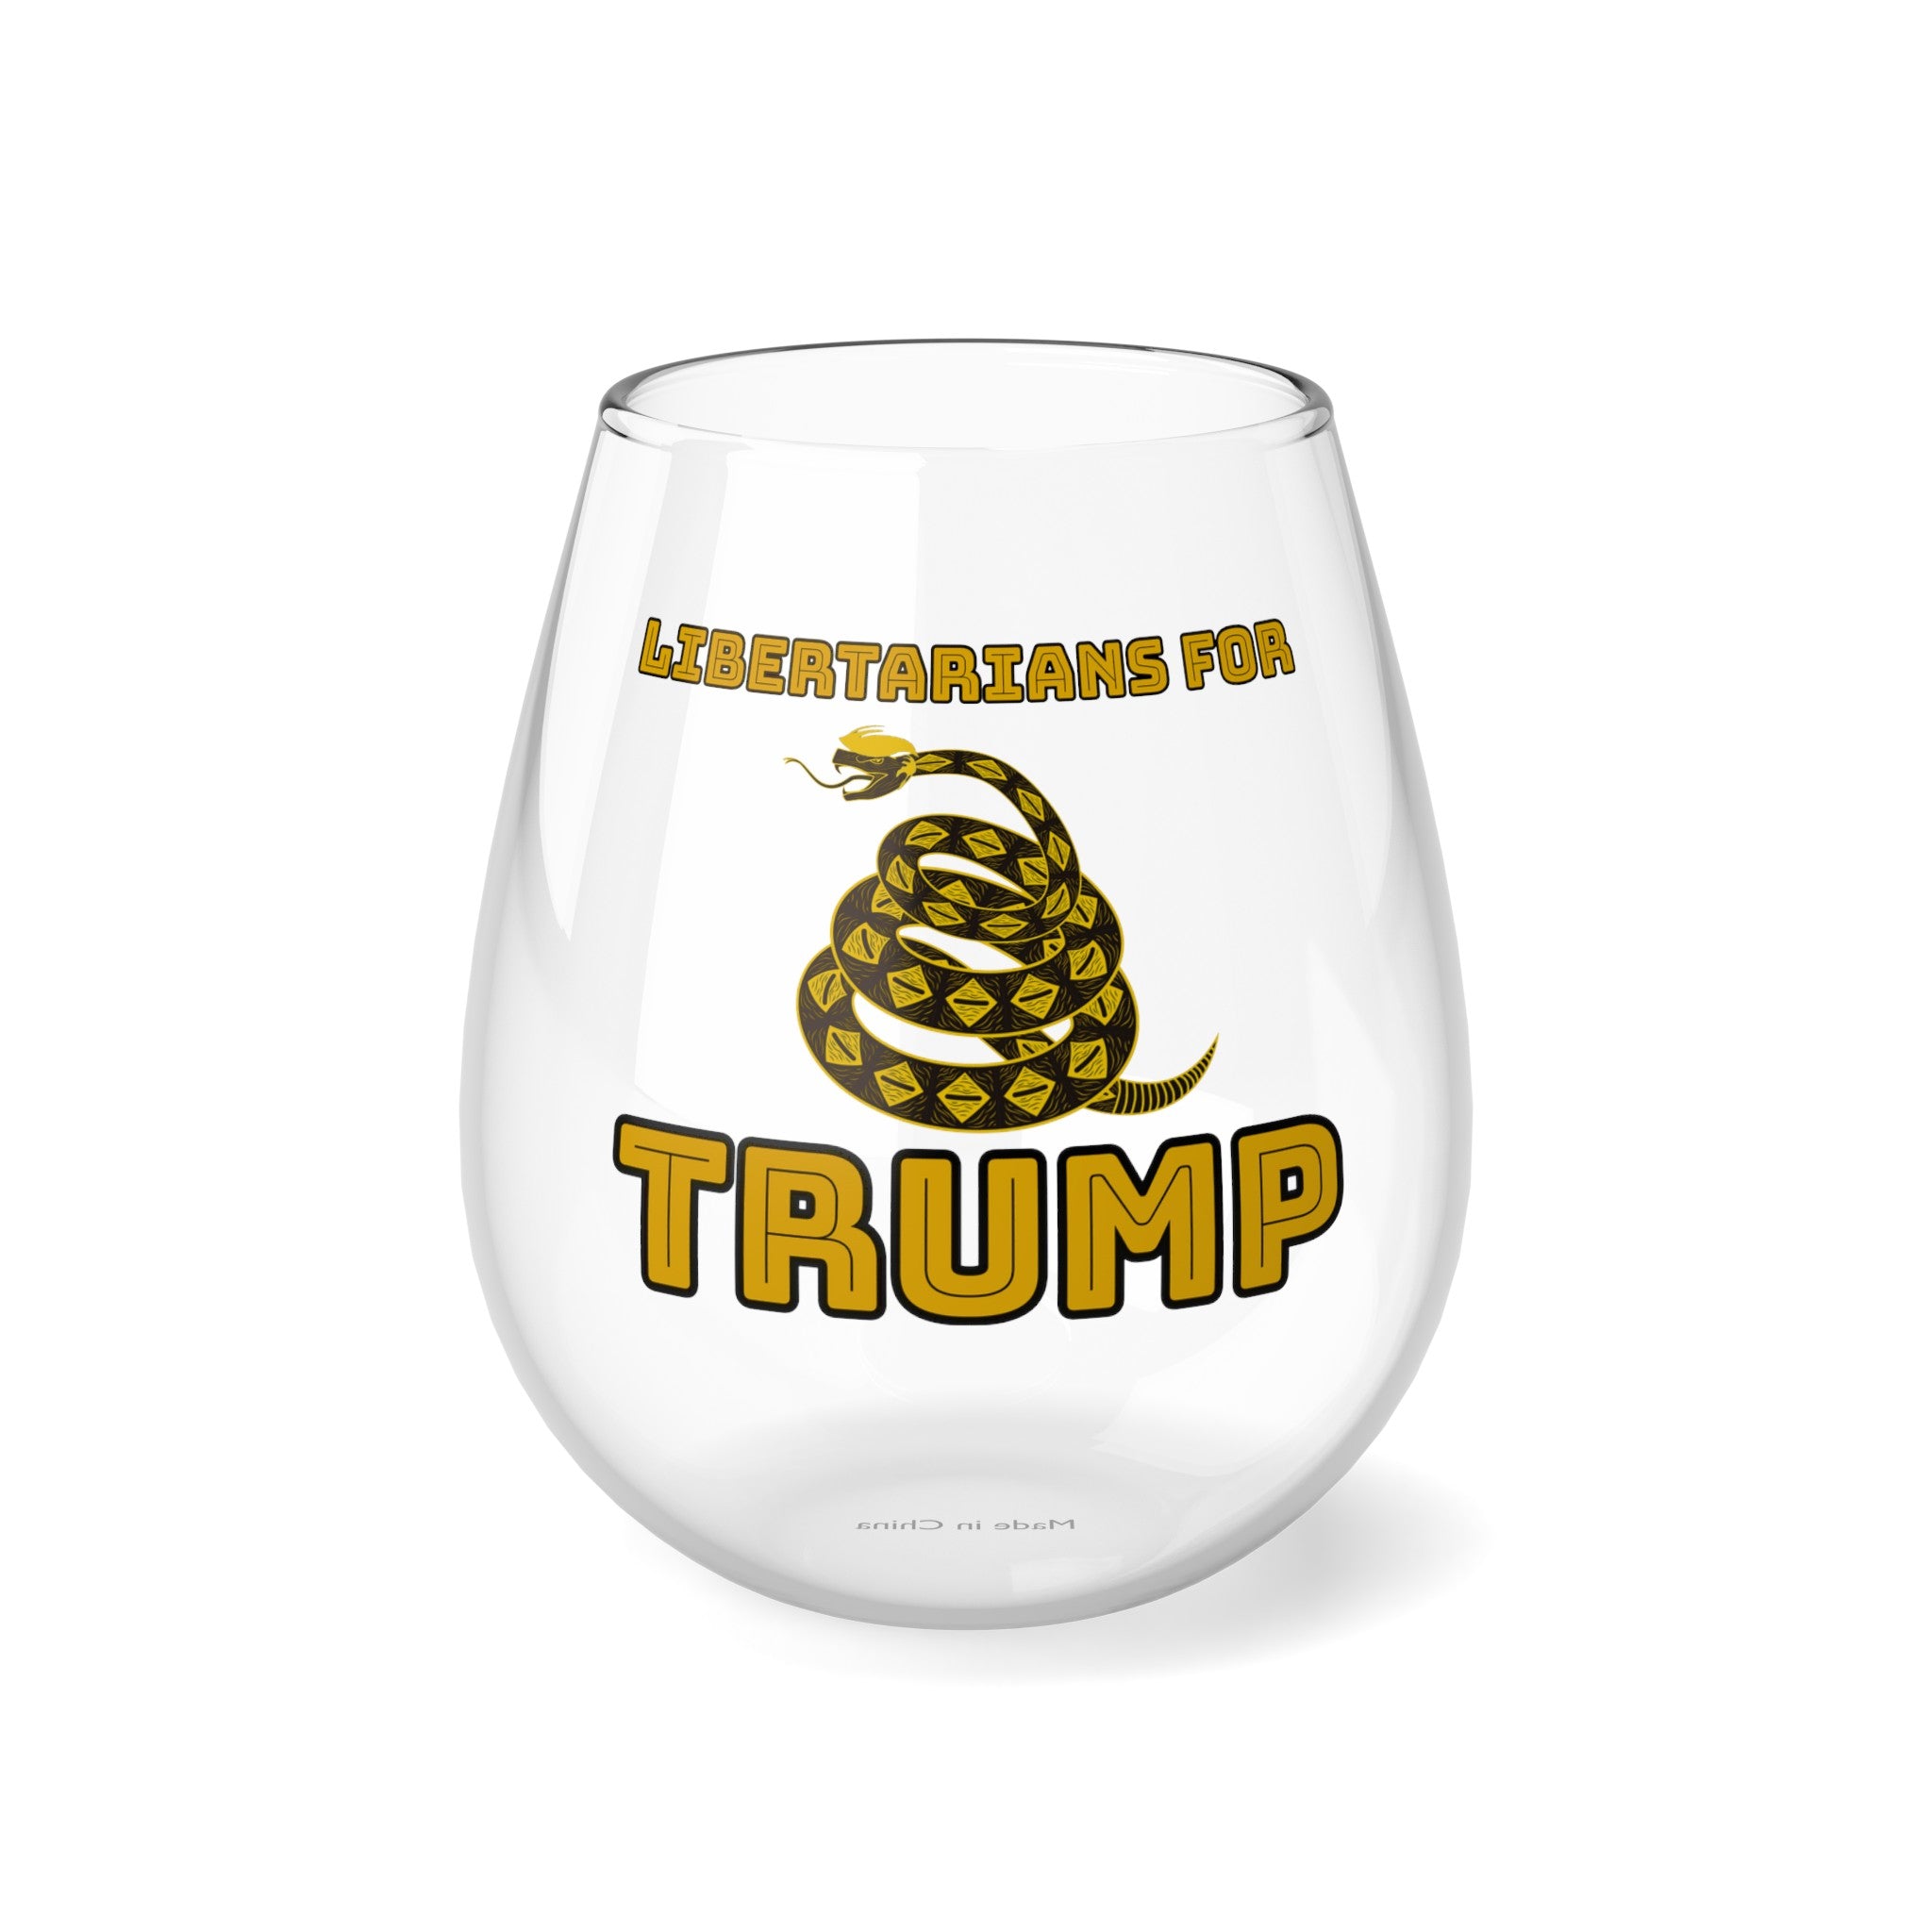 Libertarians for Trump Gadsden Stemless Wine Glass, 11.75oz